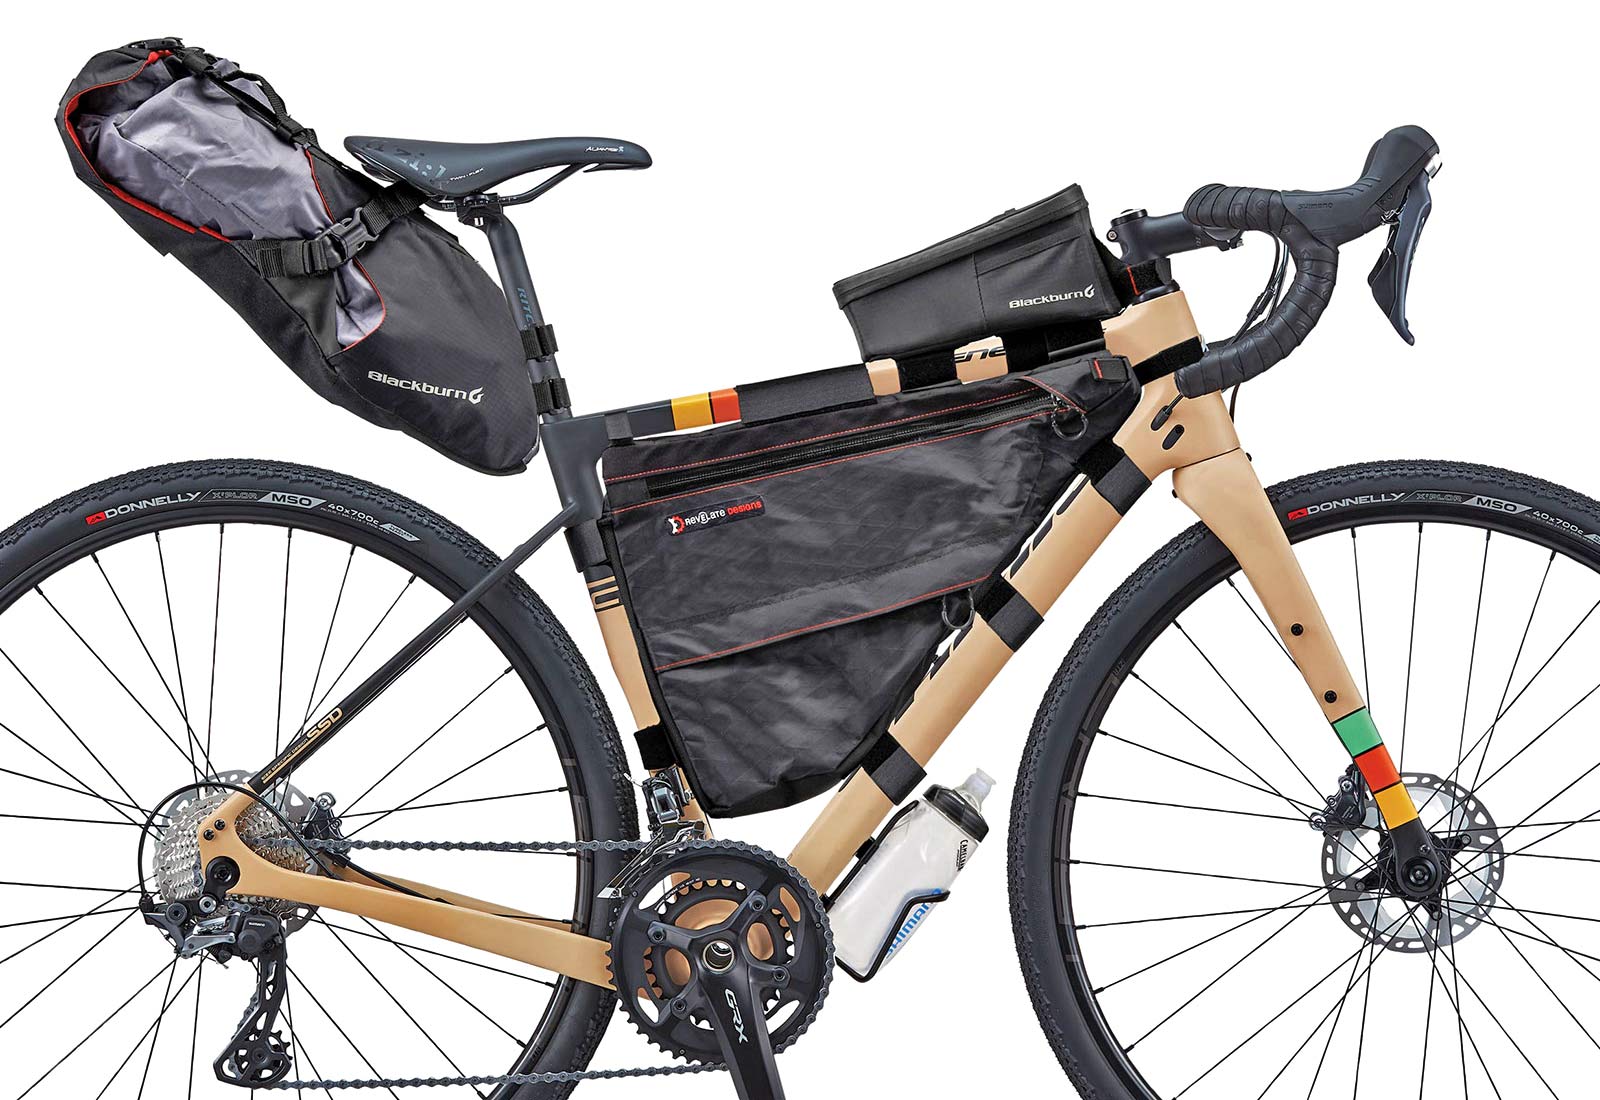 2020 Jamis Renegade C1 carbon gravel bike, Shimano GRX versatile carbon gravel all-road bikepacking bike